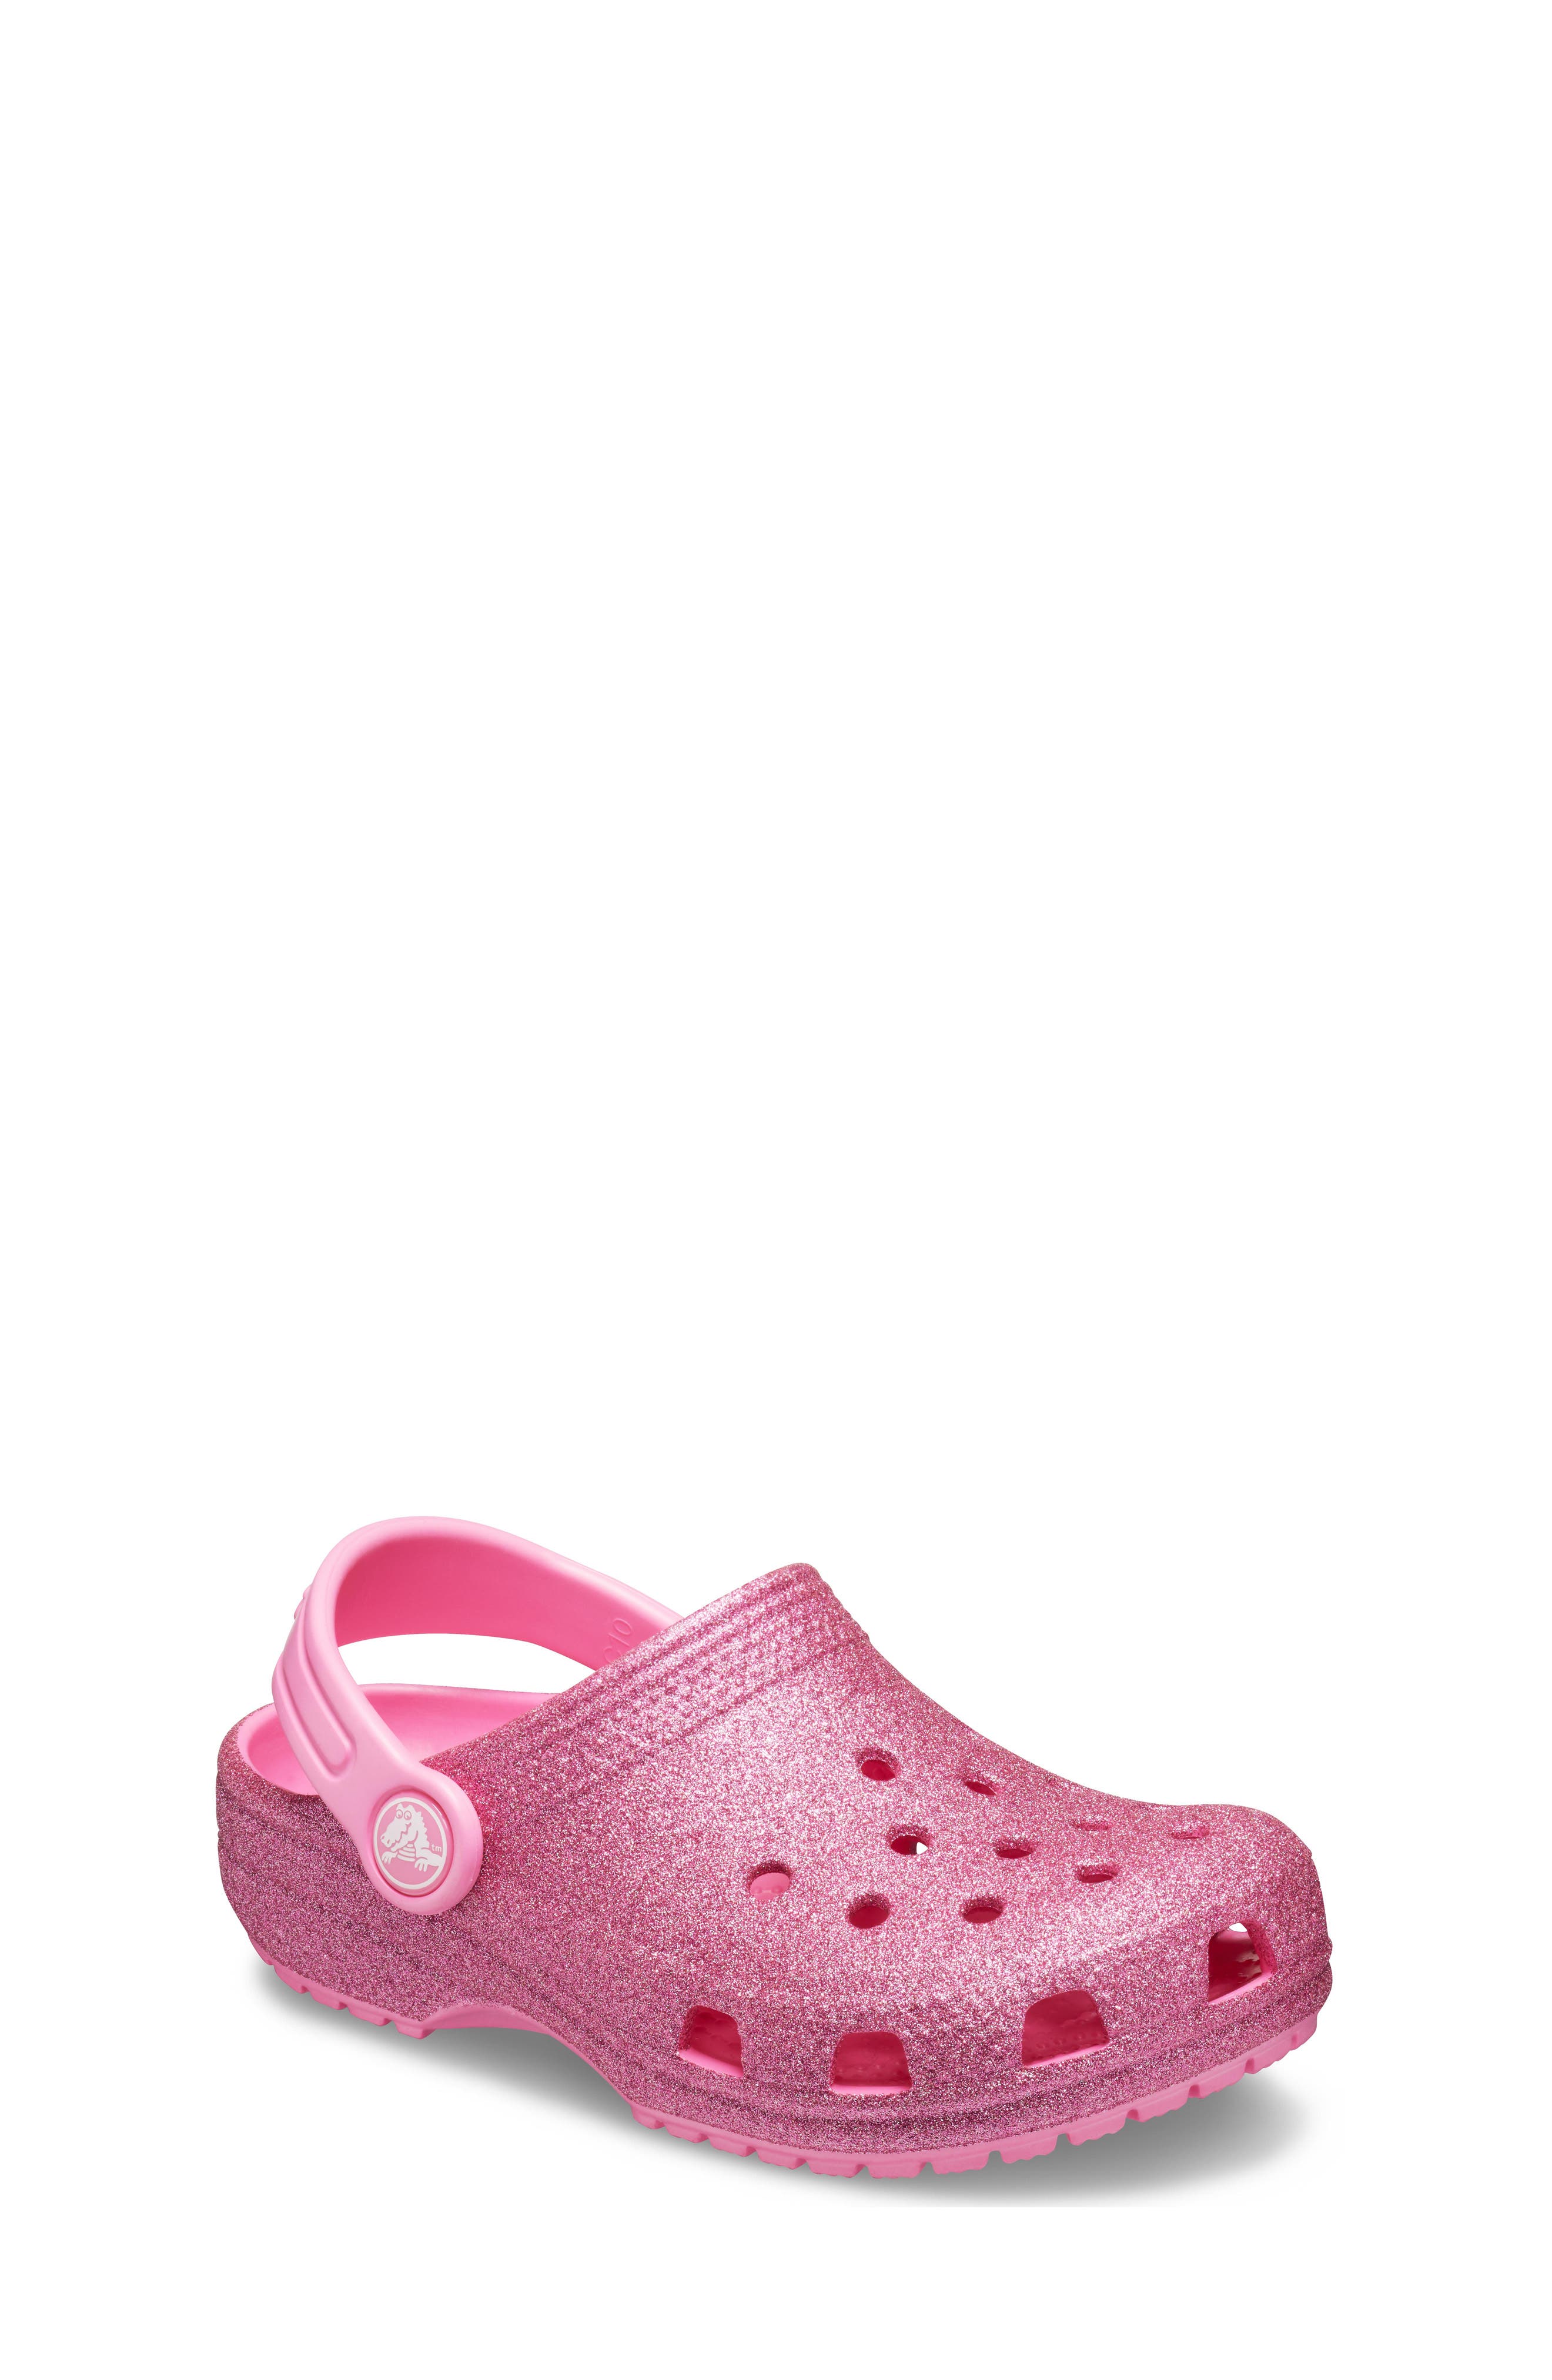 Big Girls' CROCS™ Shoes (Sizes 3.5-7)